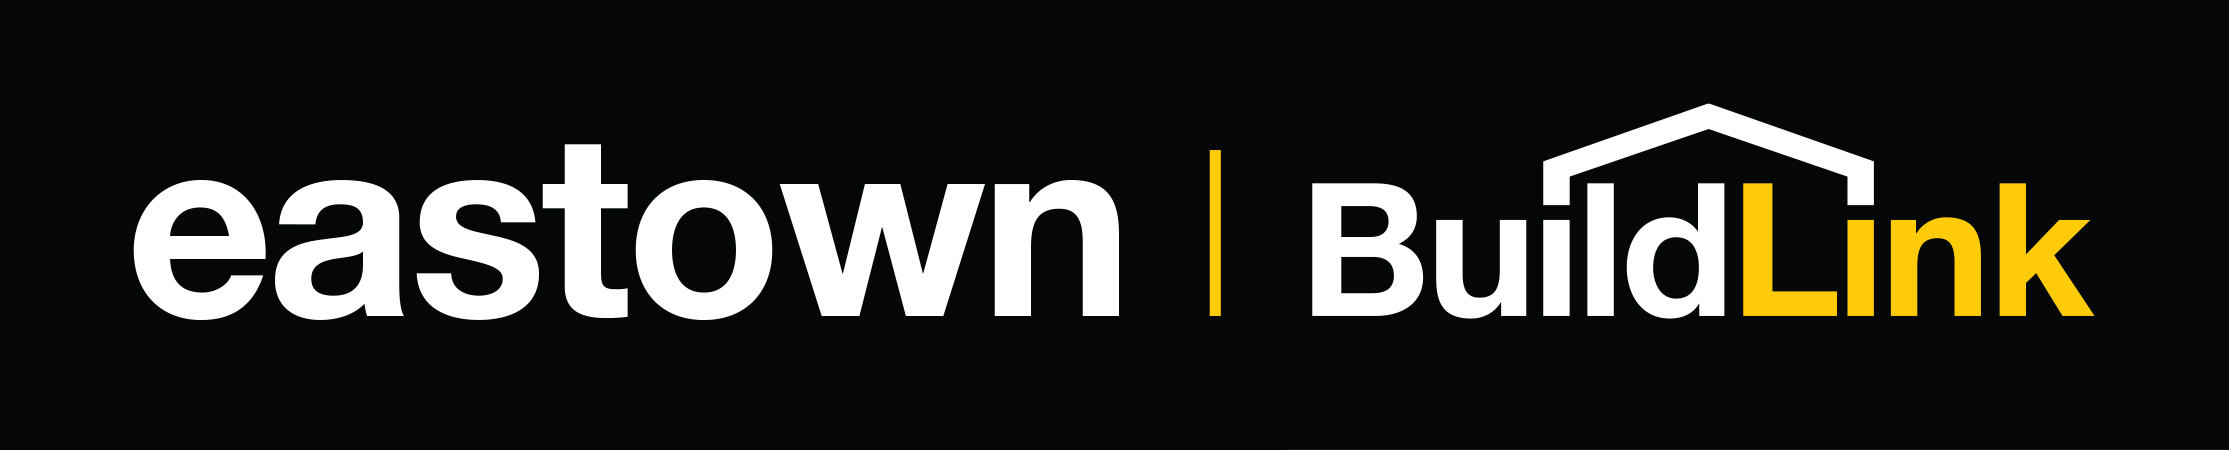 Eastown Buildlink logo